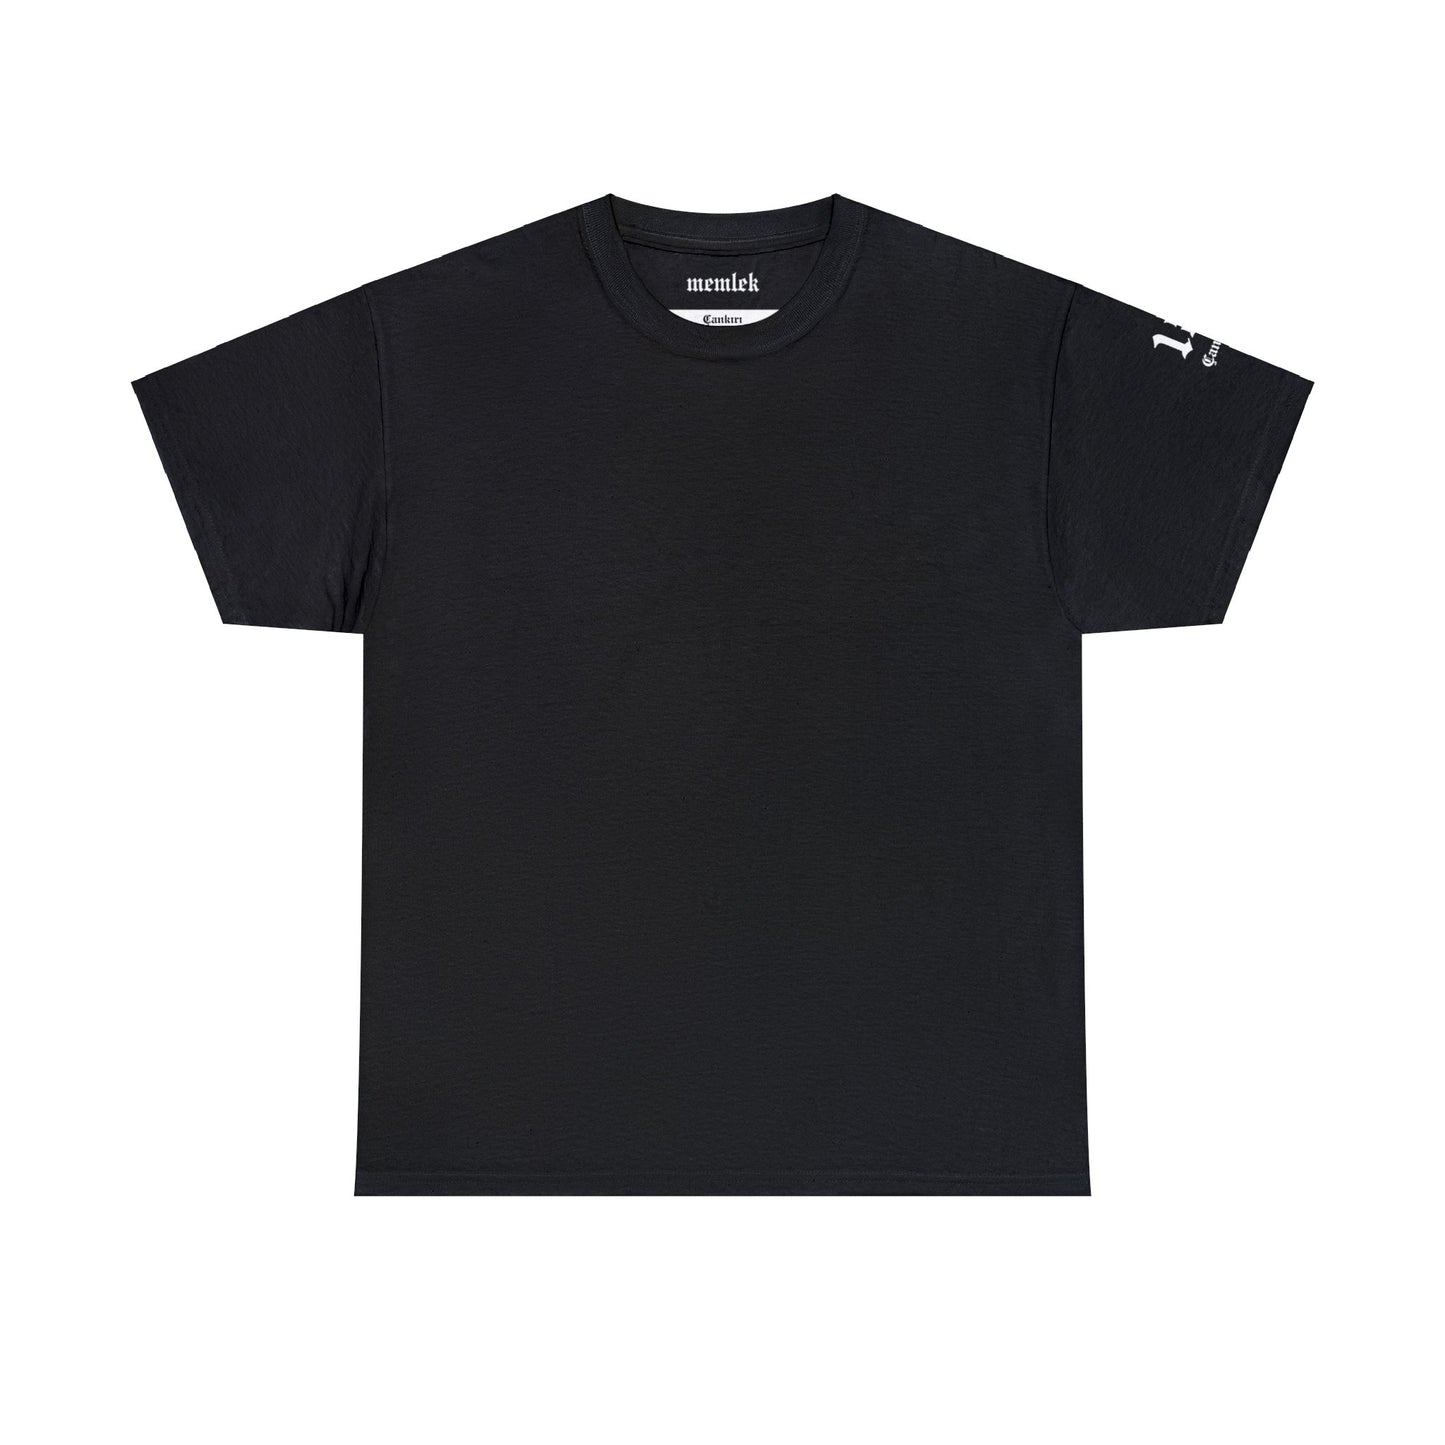 Şehirim - 18 Çankırı - T-Shirt - Back Print - Black